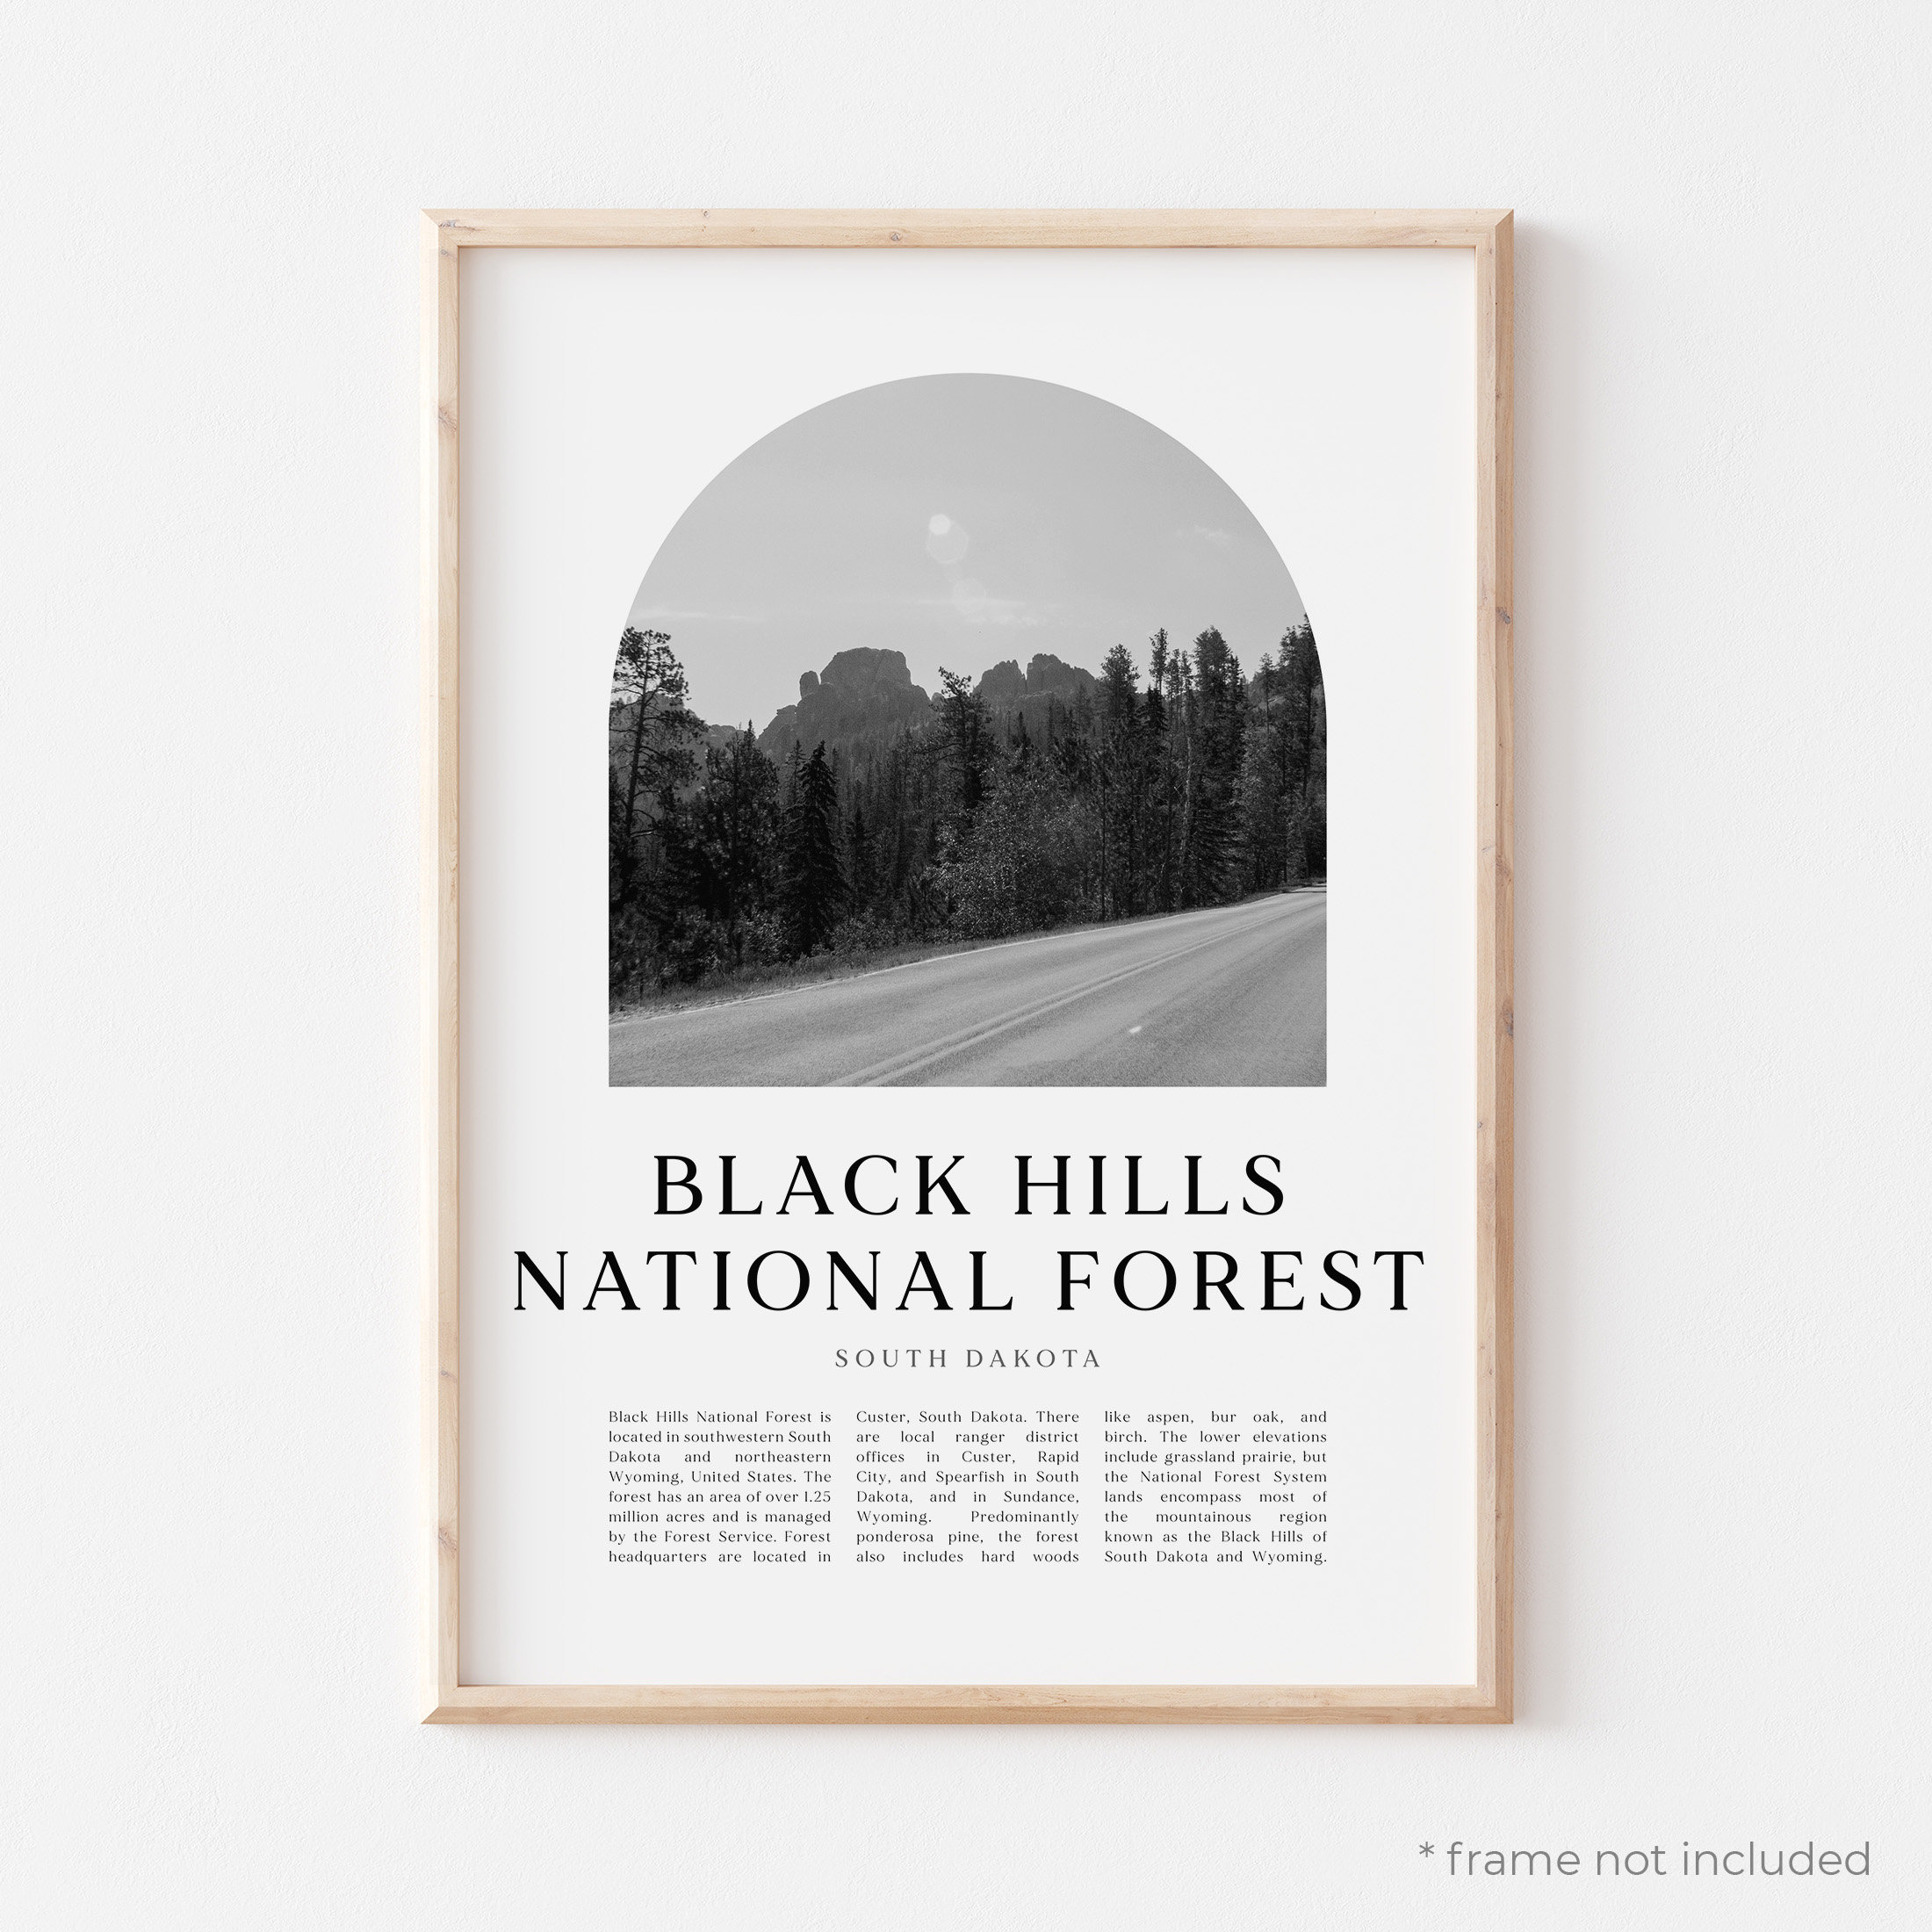 Black Hills National Forest Art Print Black Hills National image pic